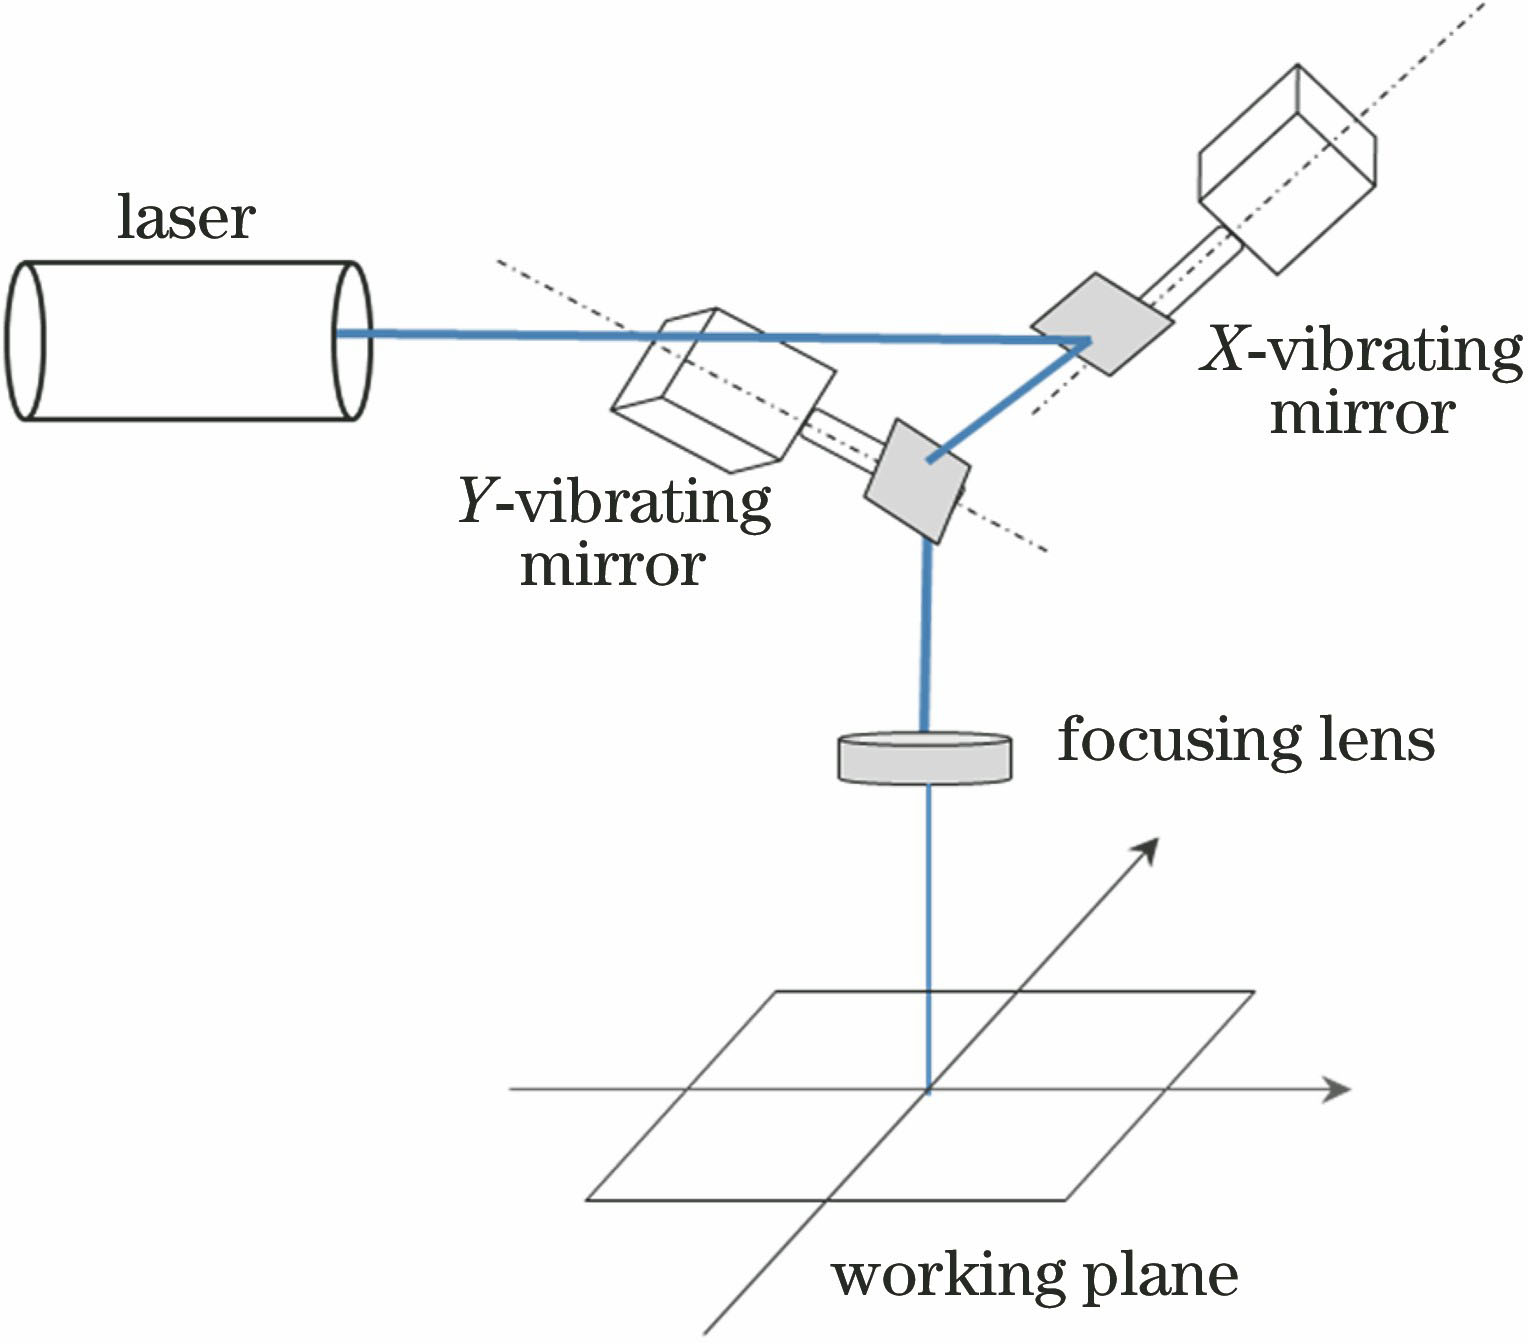 Working schematic of laser marking equipment